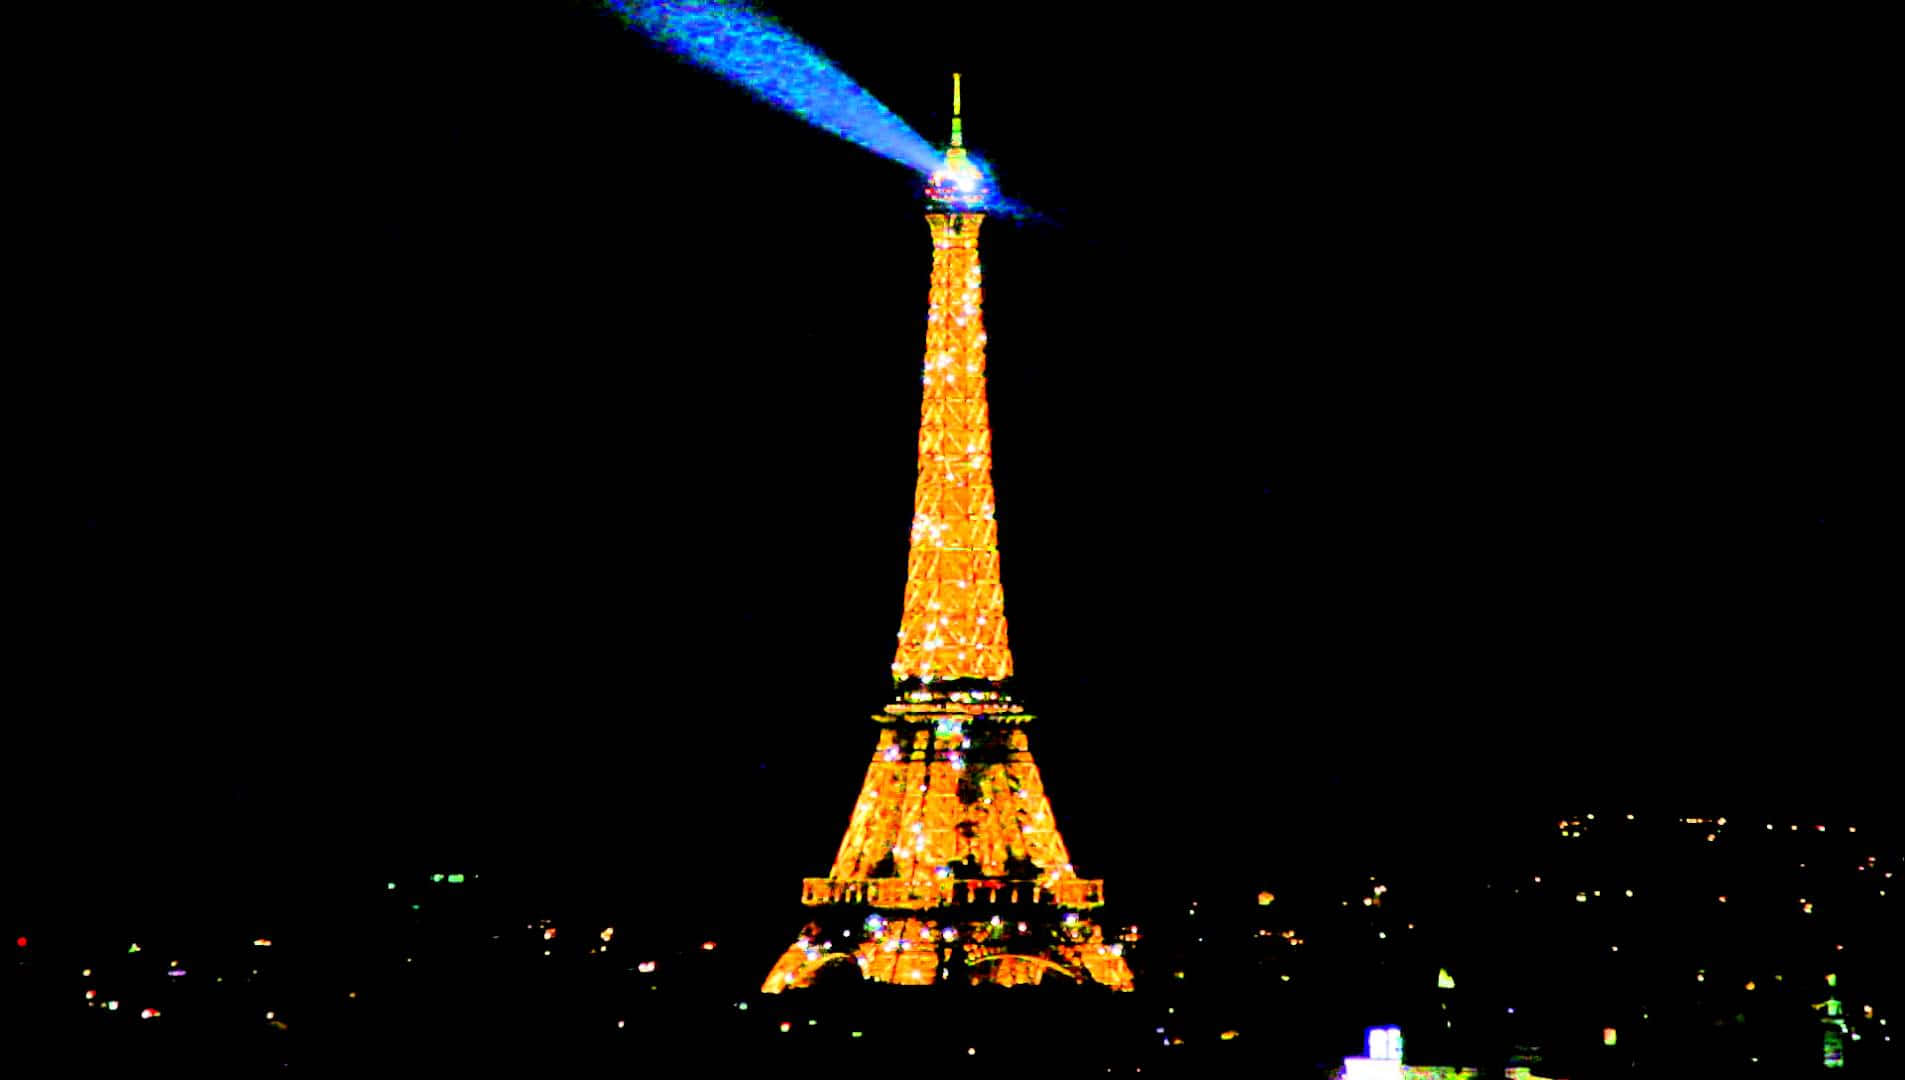 Imagende La Torre Eiffel De Noche Con Luz De Antorchas.